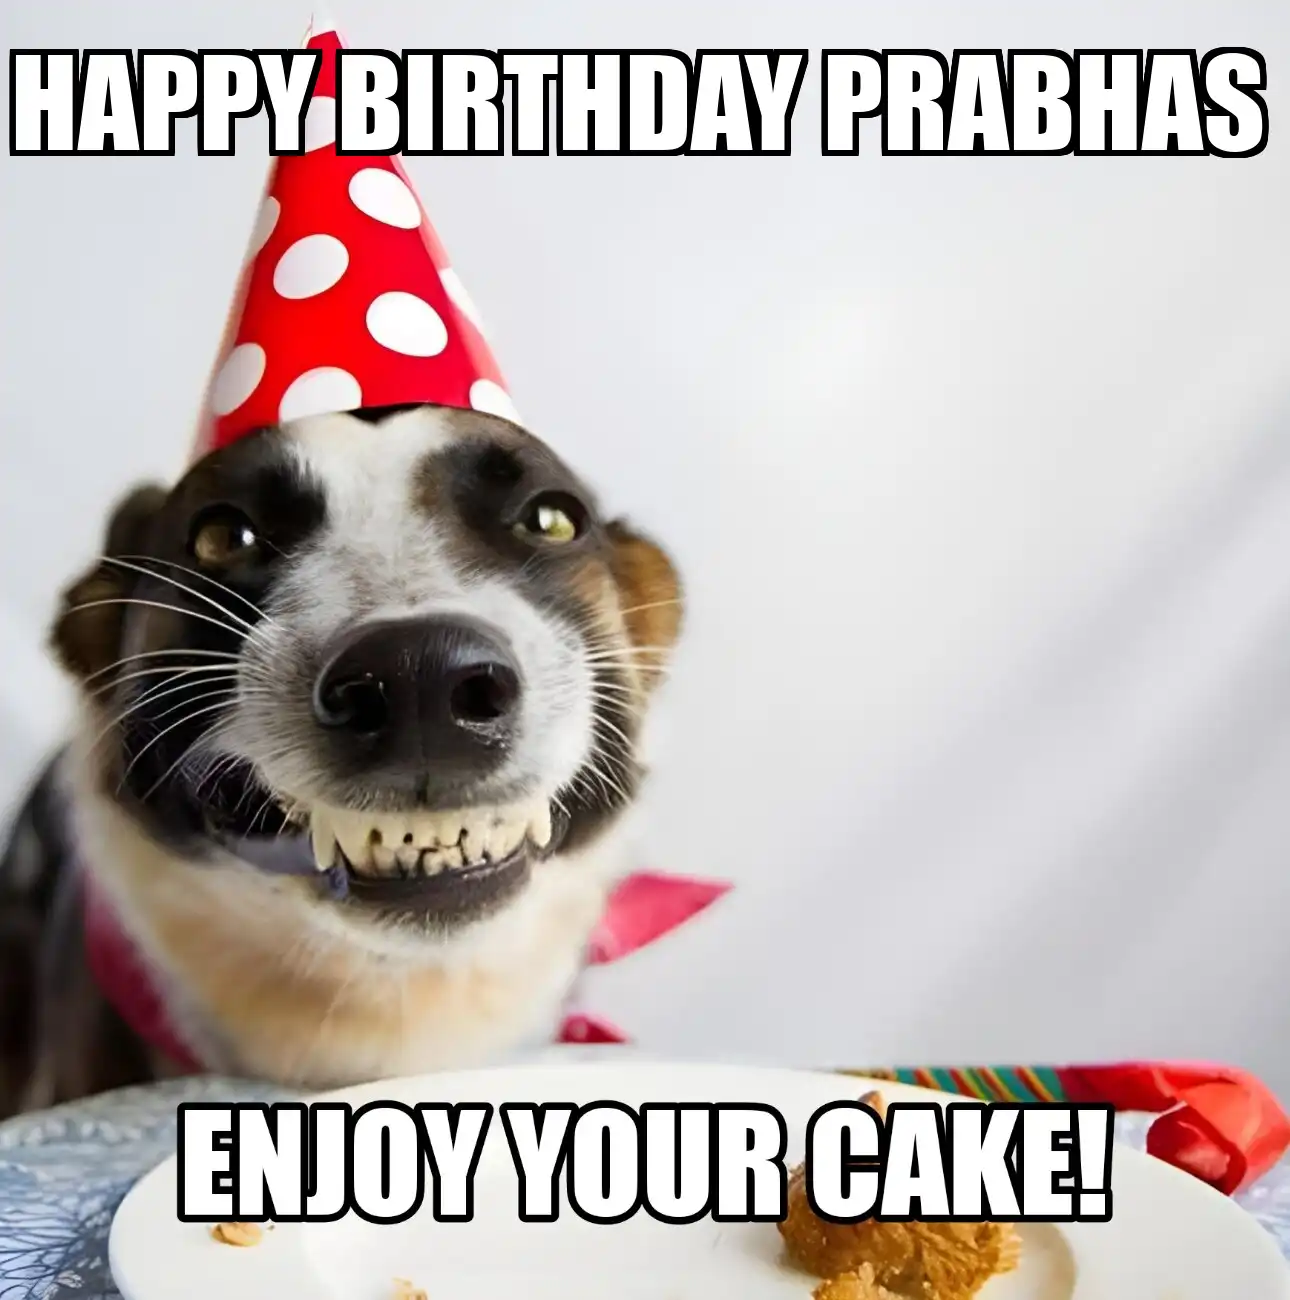 Happy Birthday Prabhas Enjoy Your Cake Dog Meme